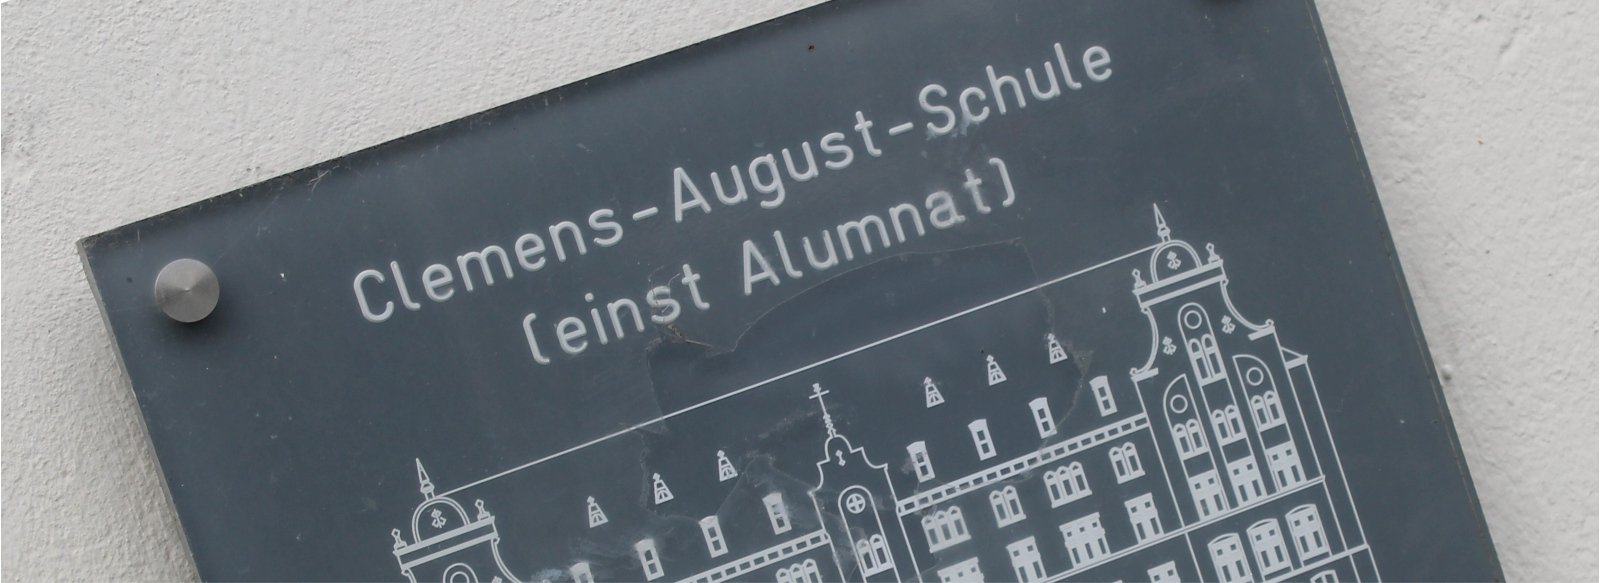 2019-07-10 - KJA Köln - JHS - Clemens August Hauptschule